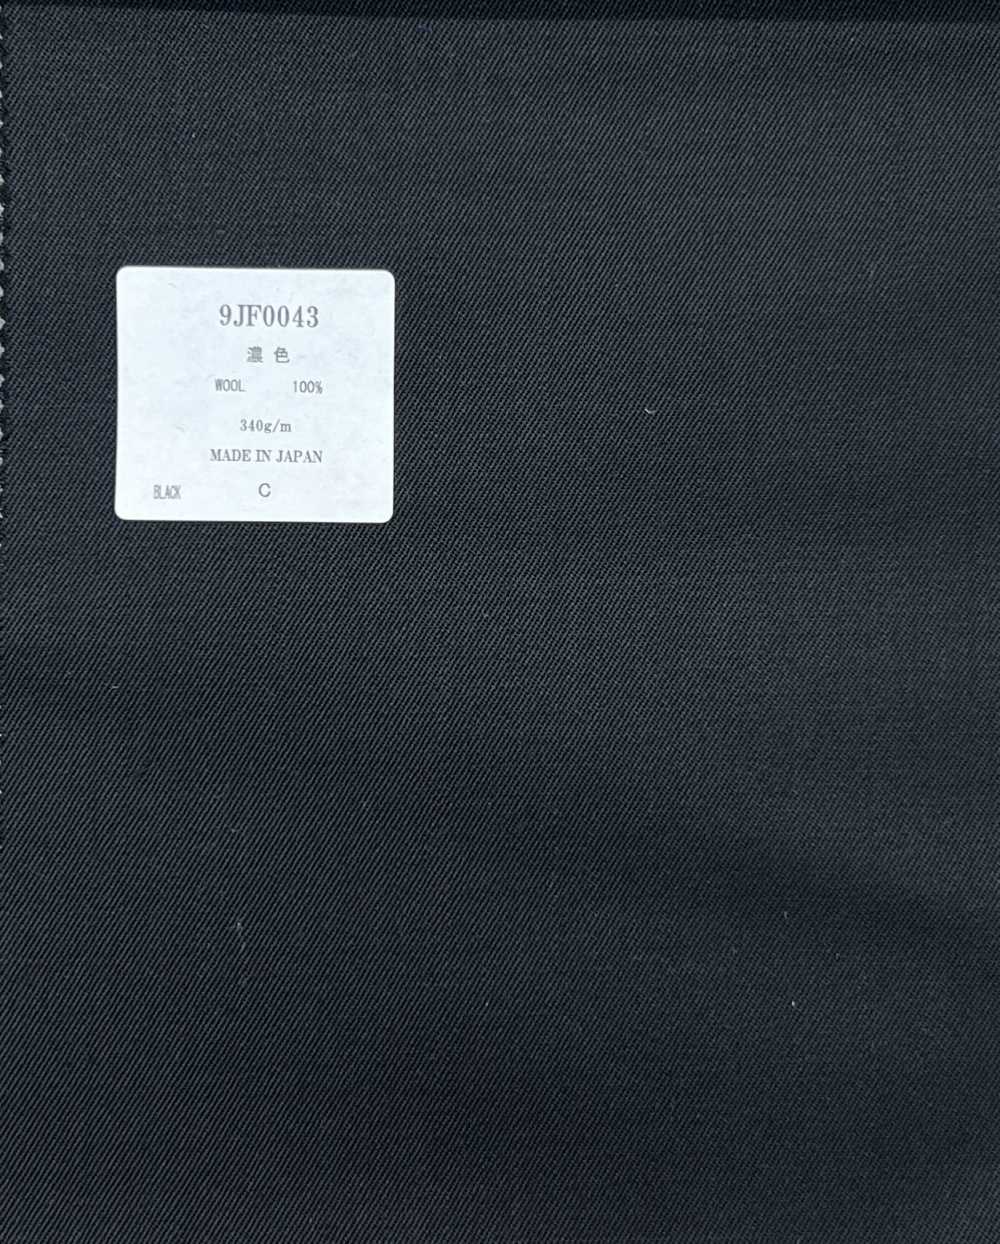 9JF0043 TEJIDO HECHO EN JAPÓN[Textil]